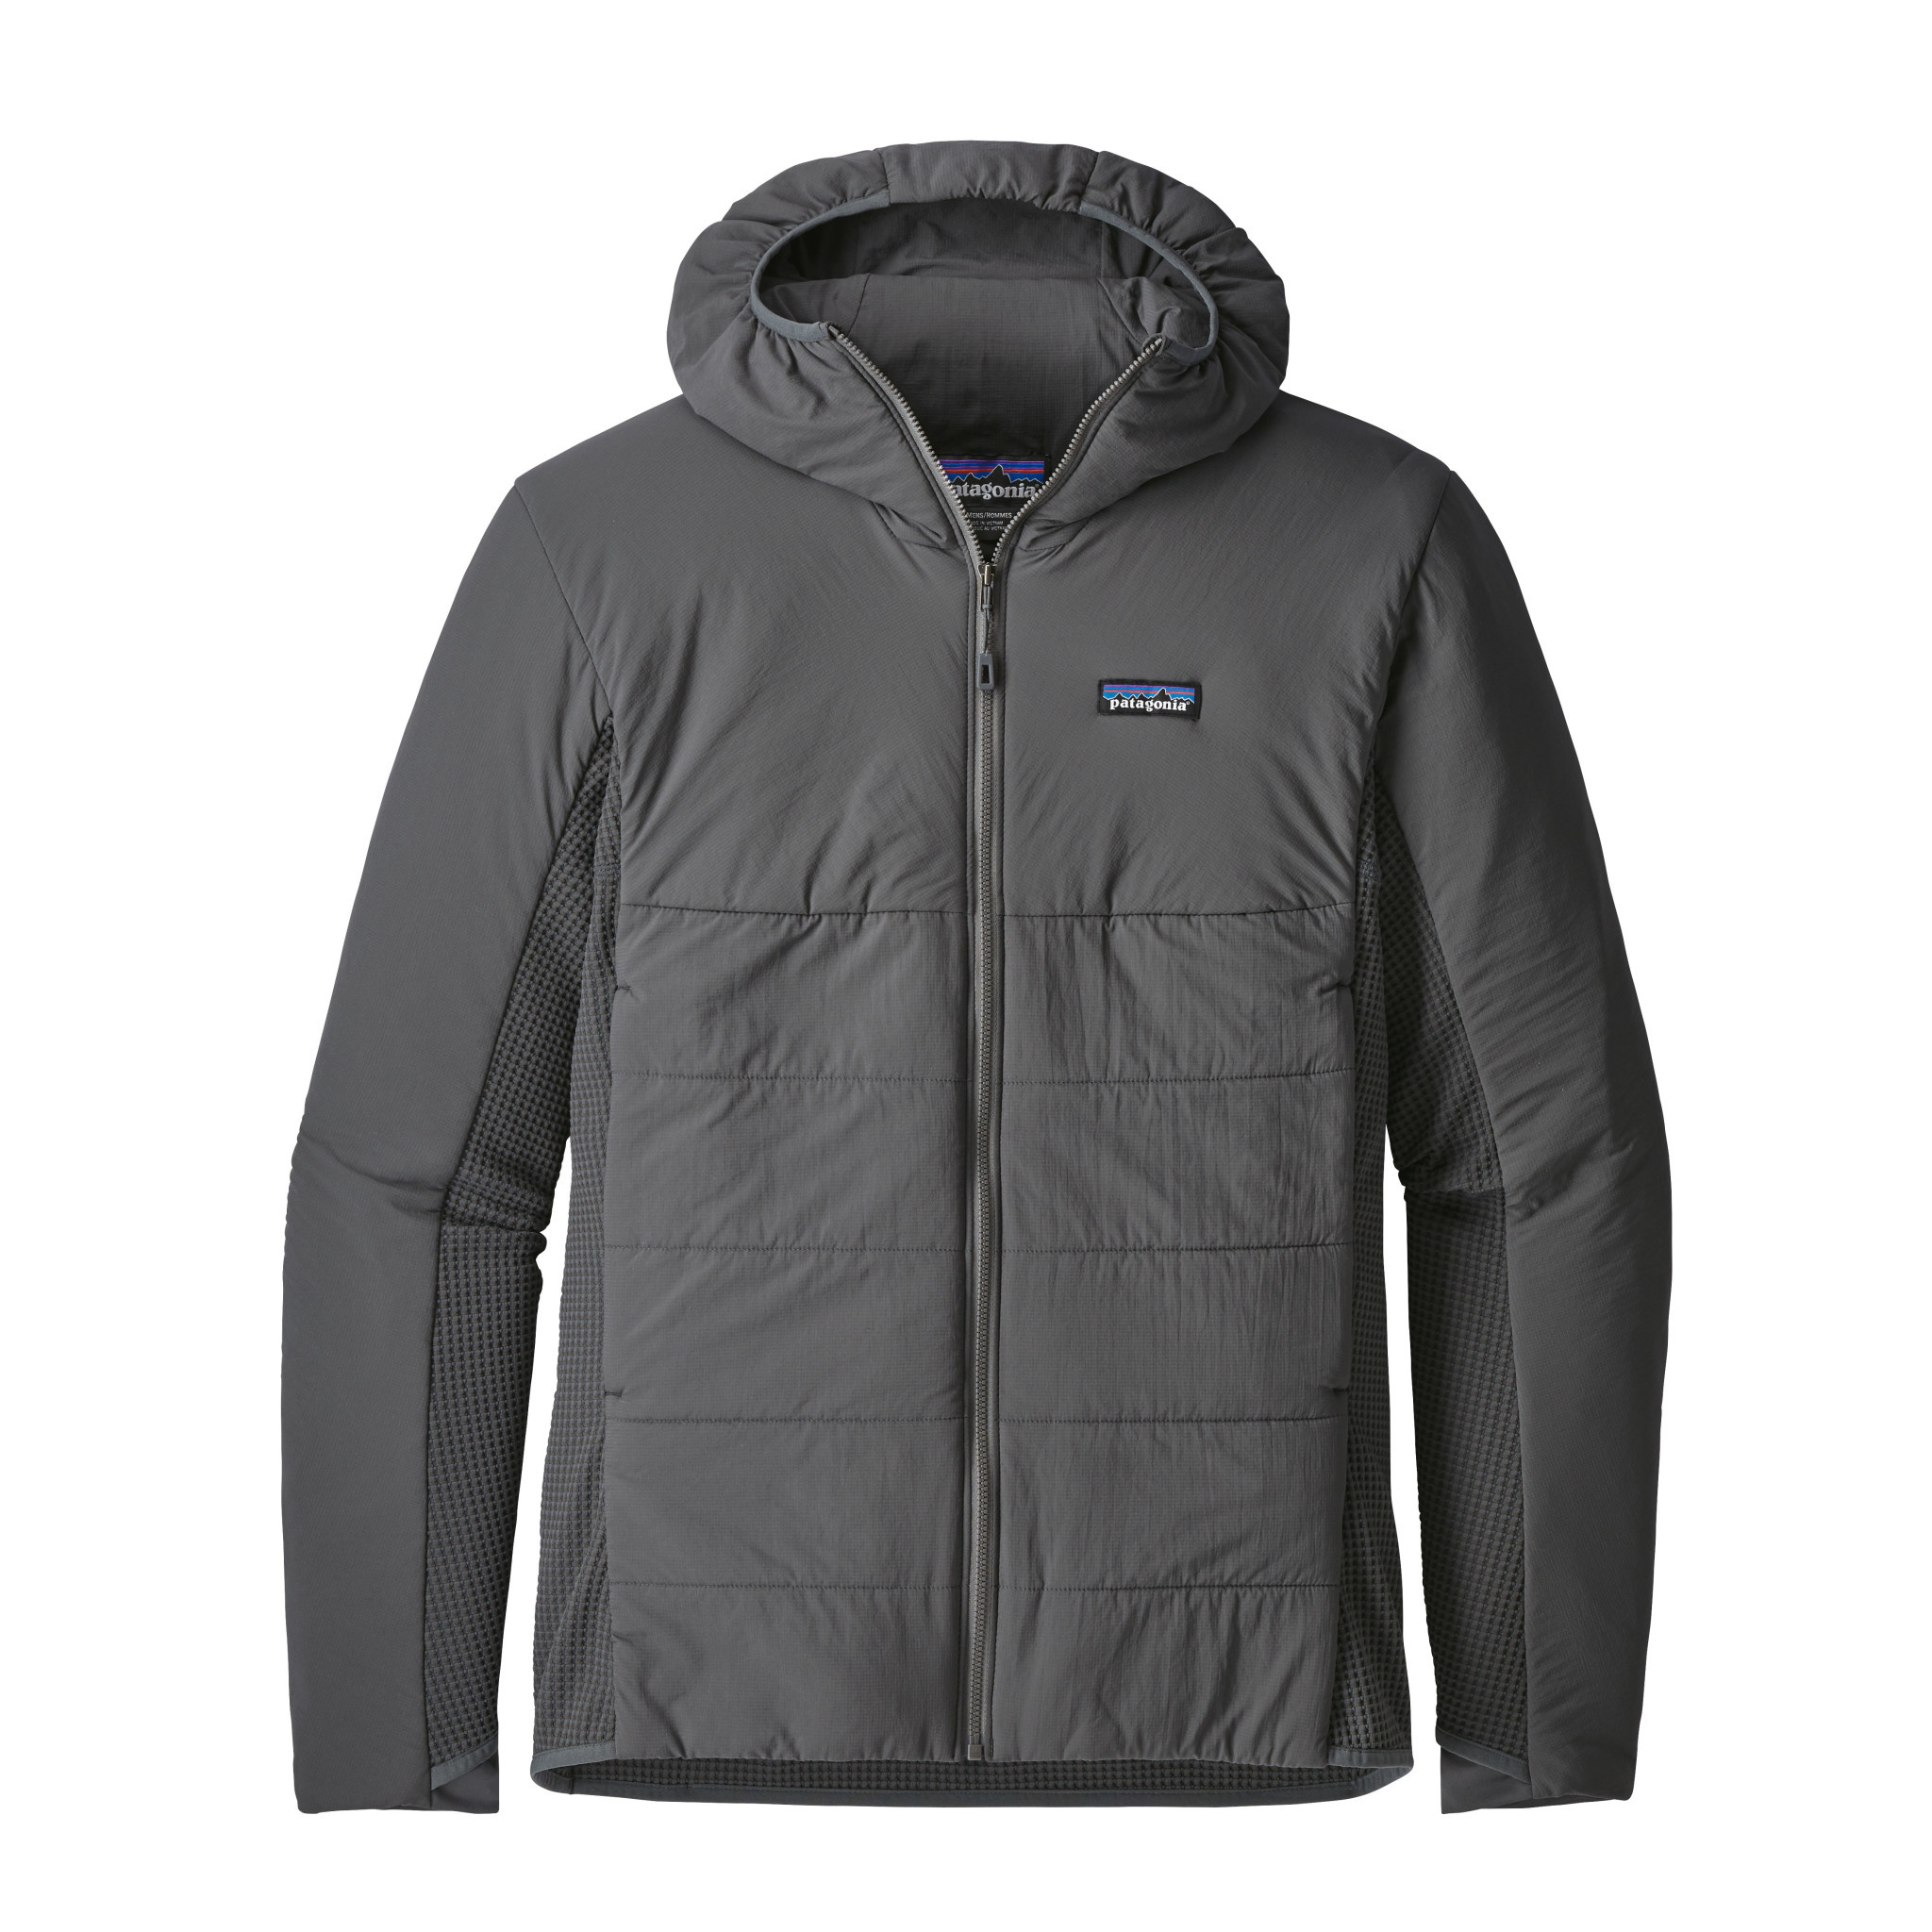 Hybrid light. Куртка Patagonia Nano Air Jacket. Забродная куртка Patagonia. Patagonia одежда мужская. Куртка Патагония мужская.